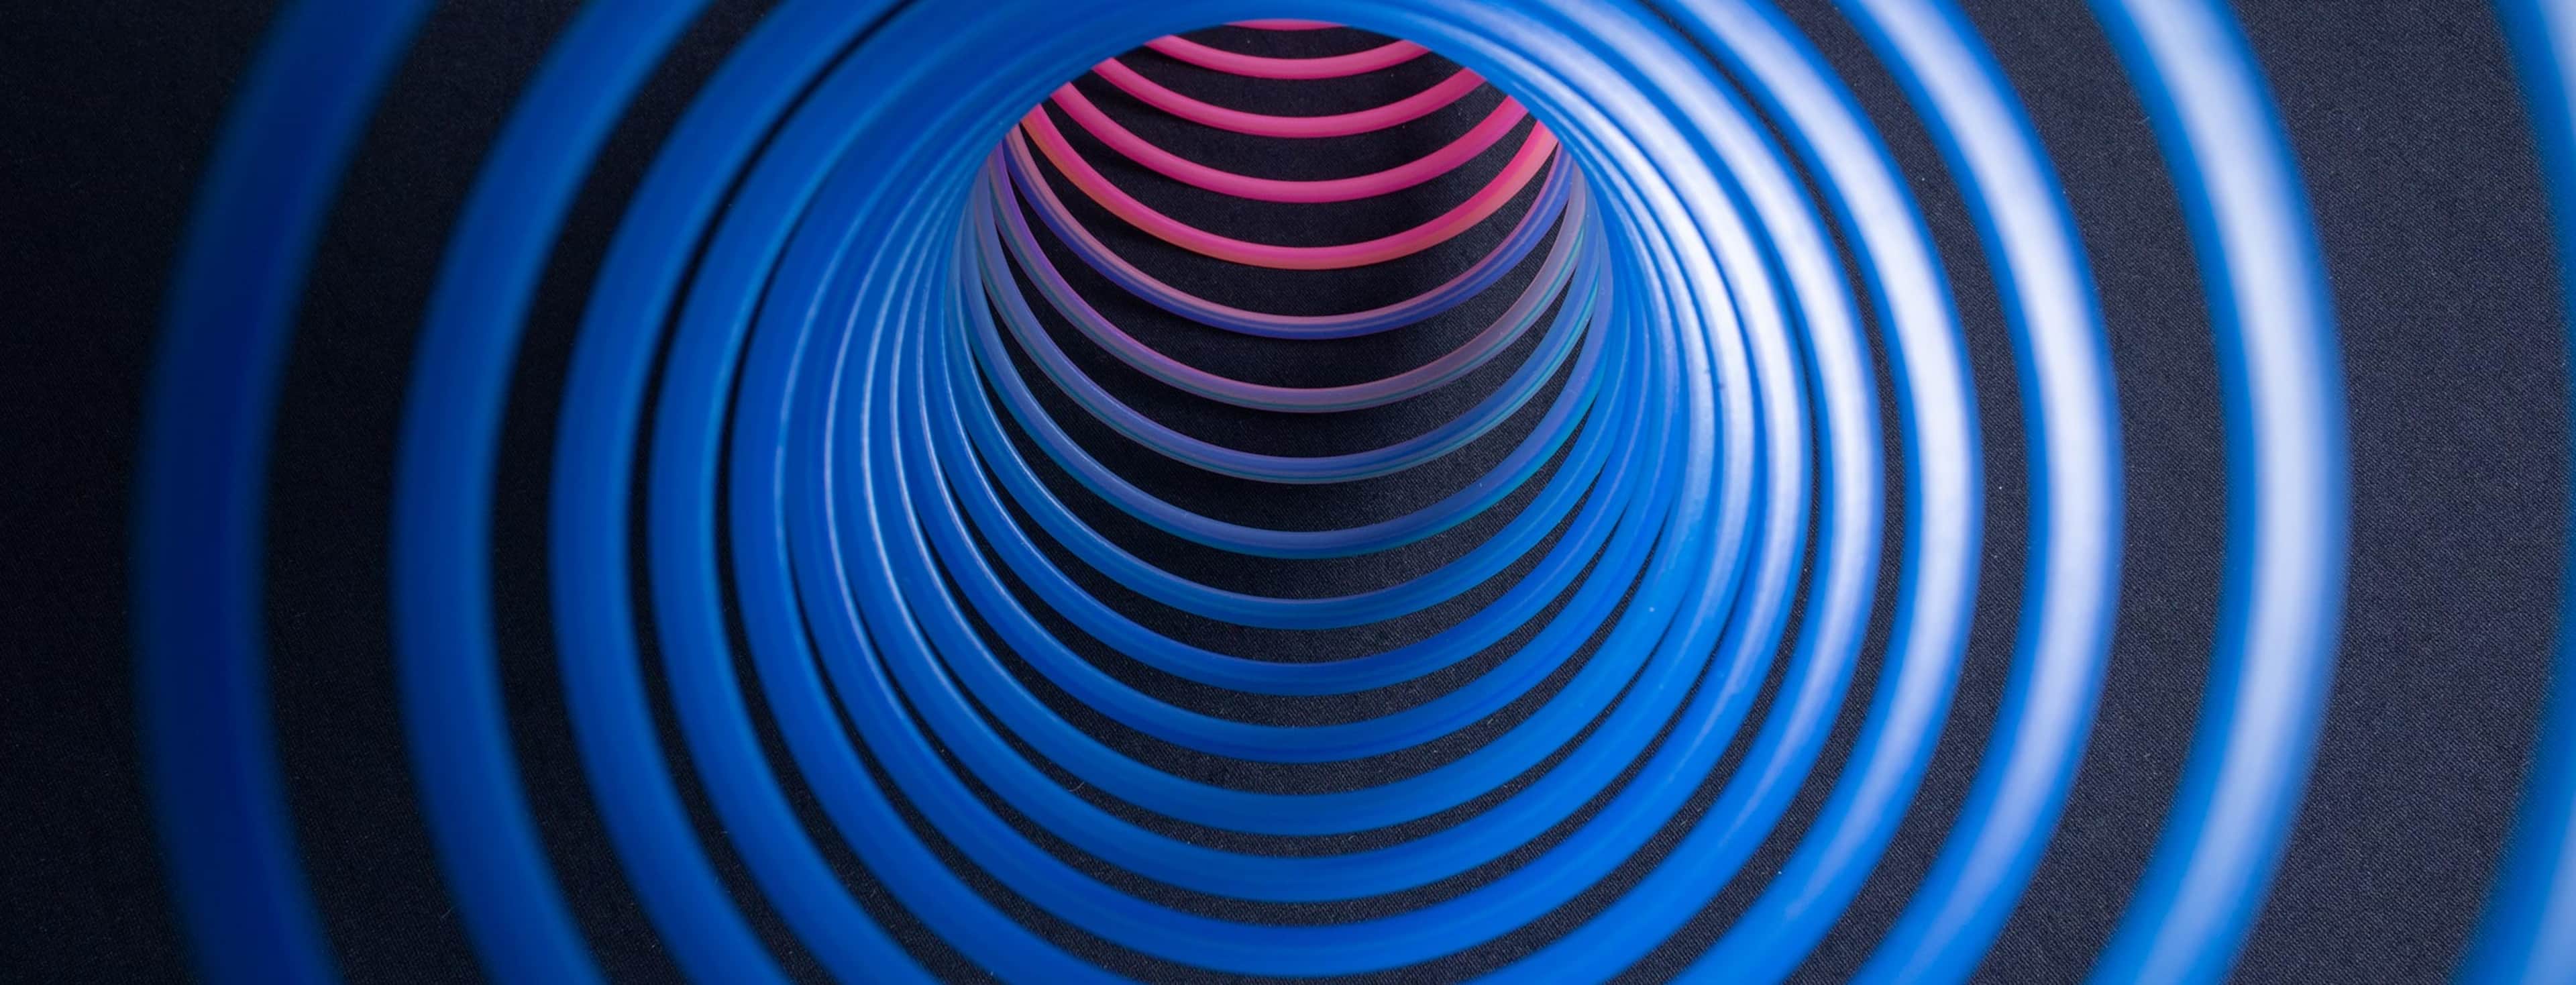 Blue spiral image